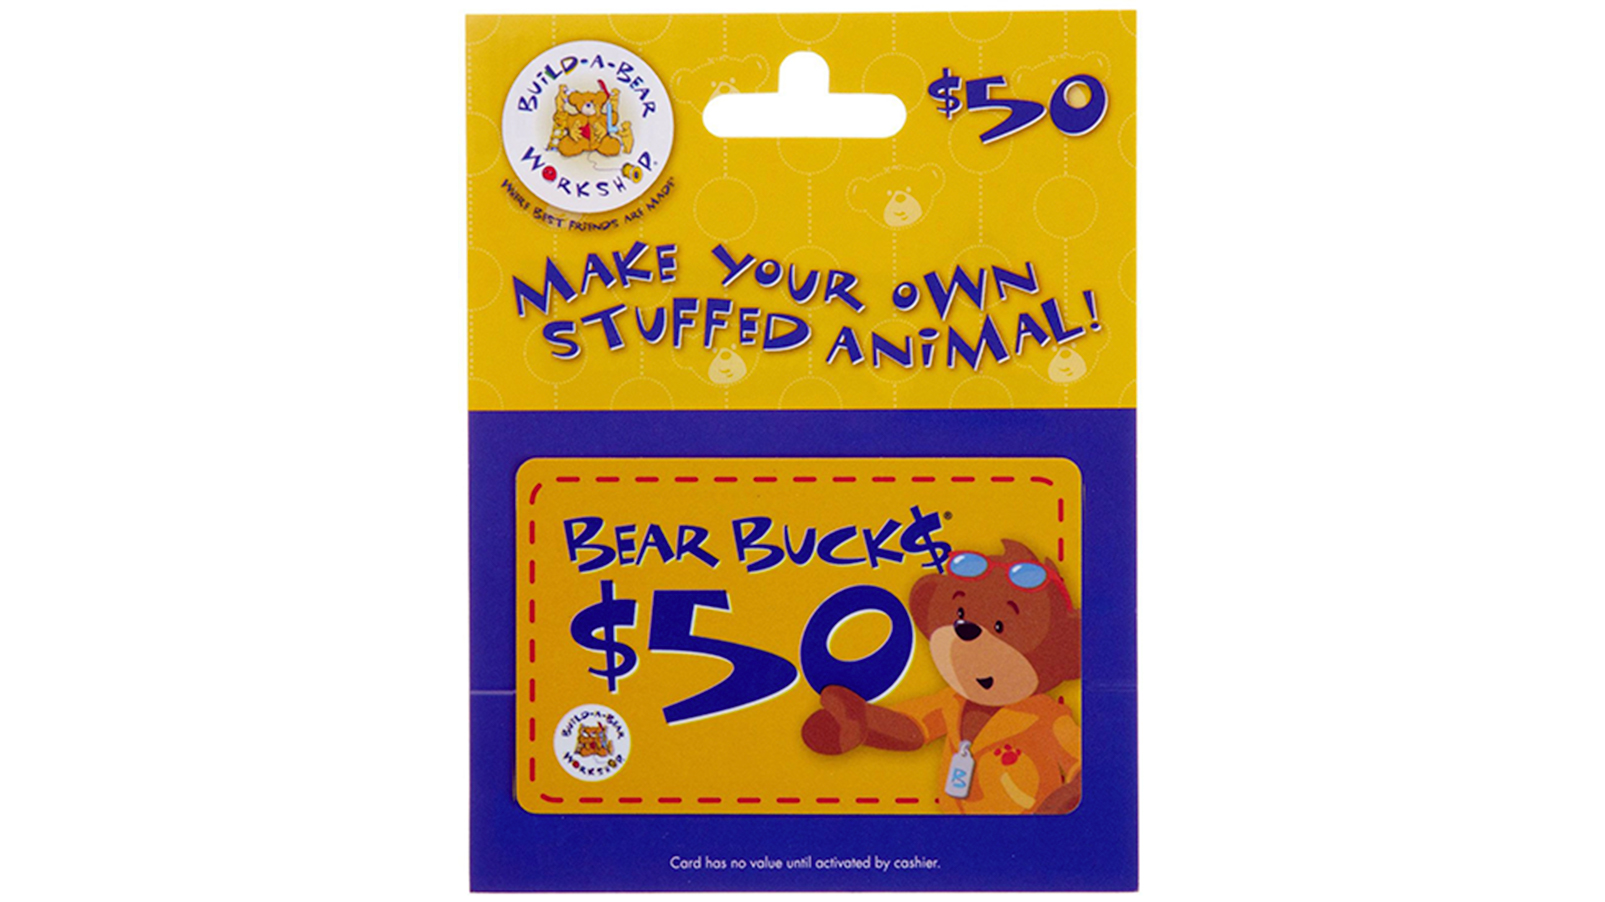 53) Build-A-Bear Gift Card